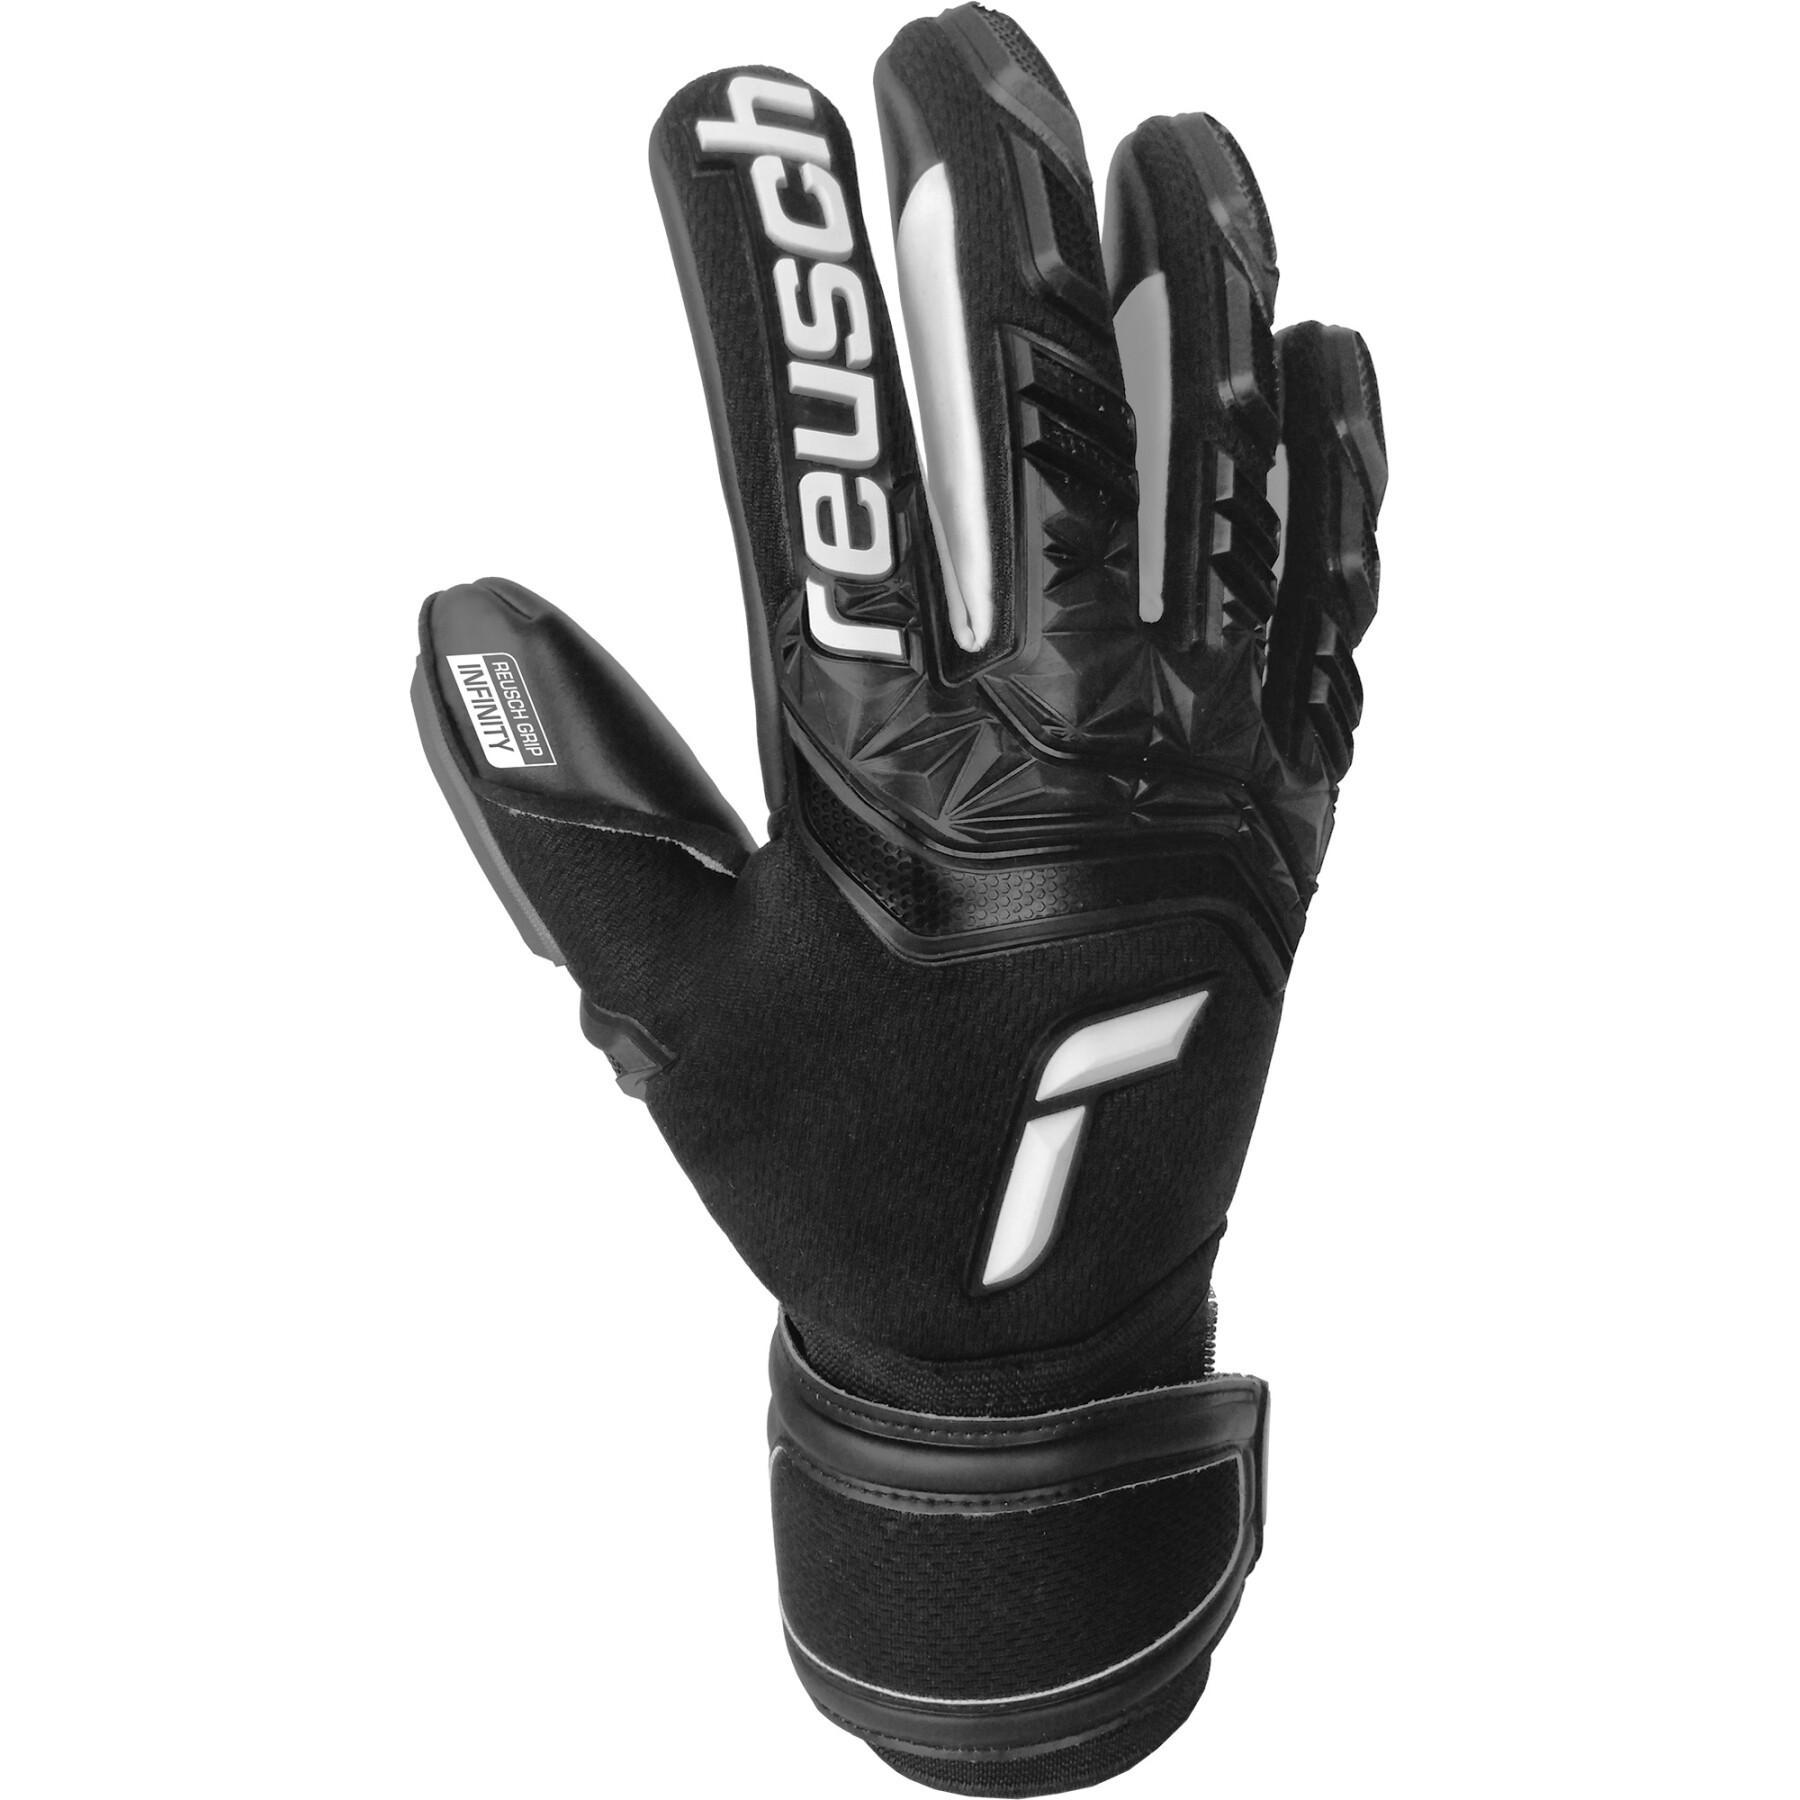 Goalkeeper gloves Reusch Attrakt Freegel Infinity